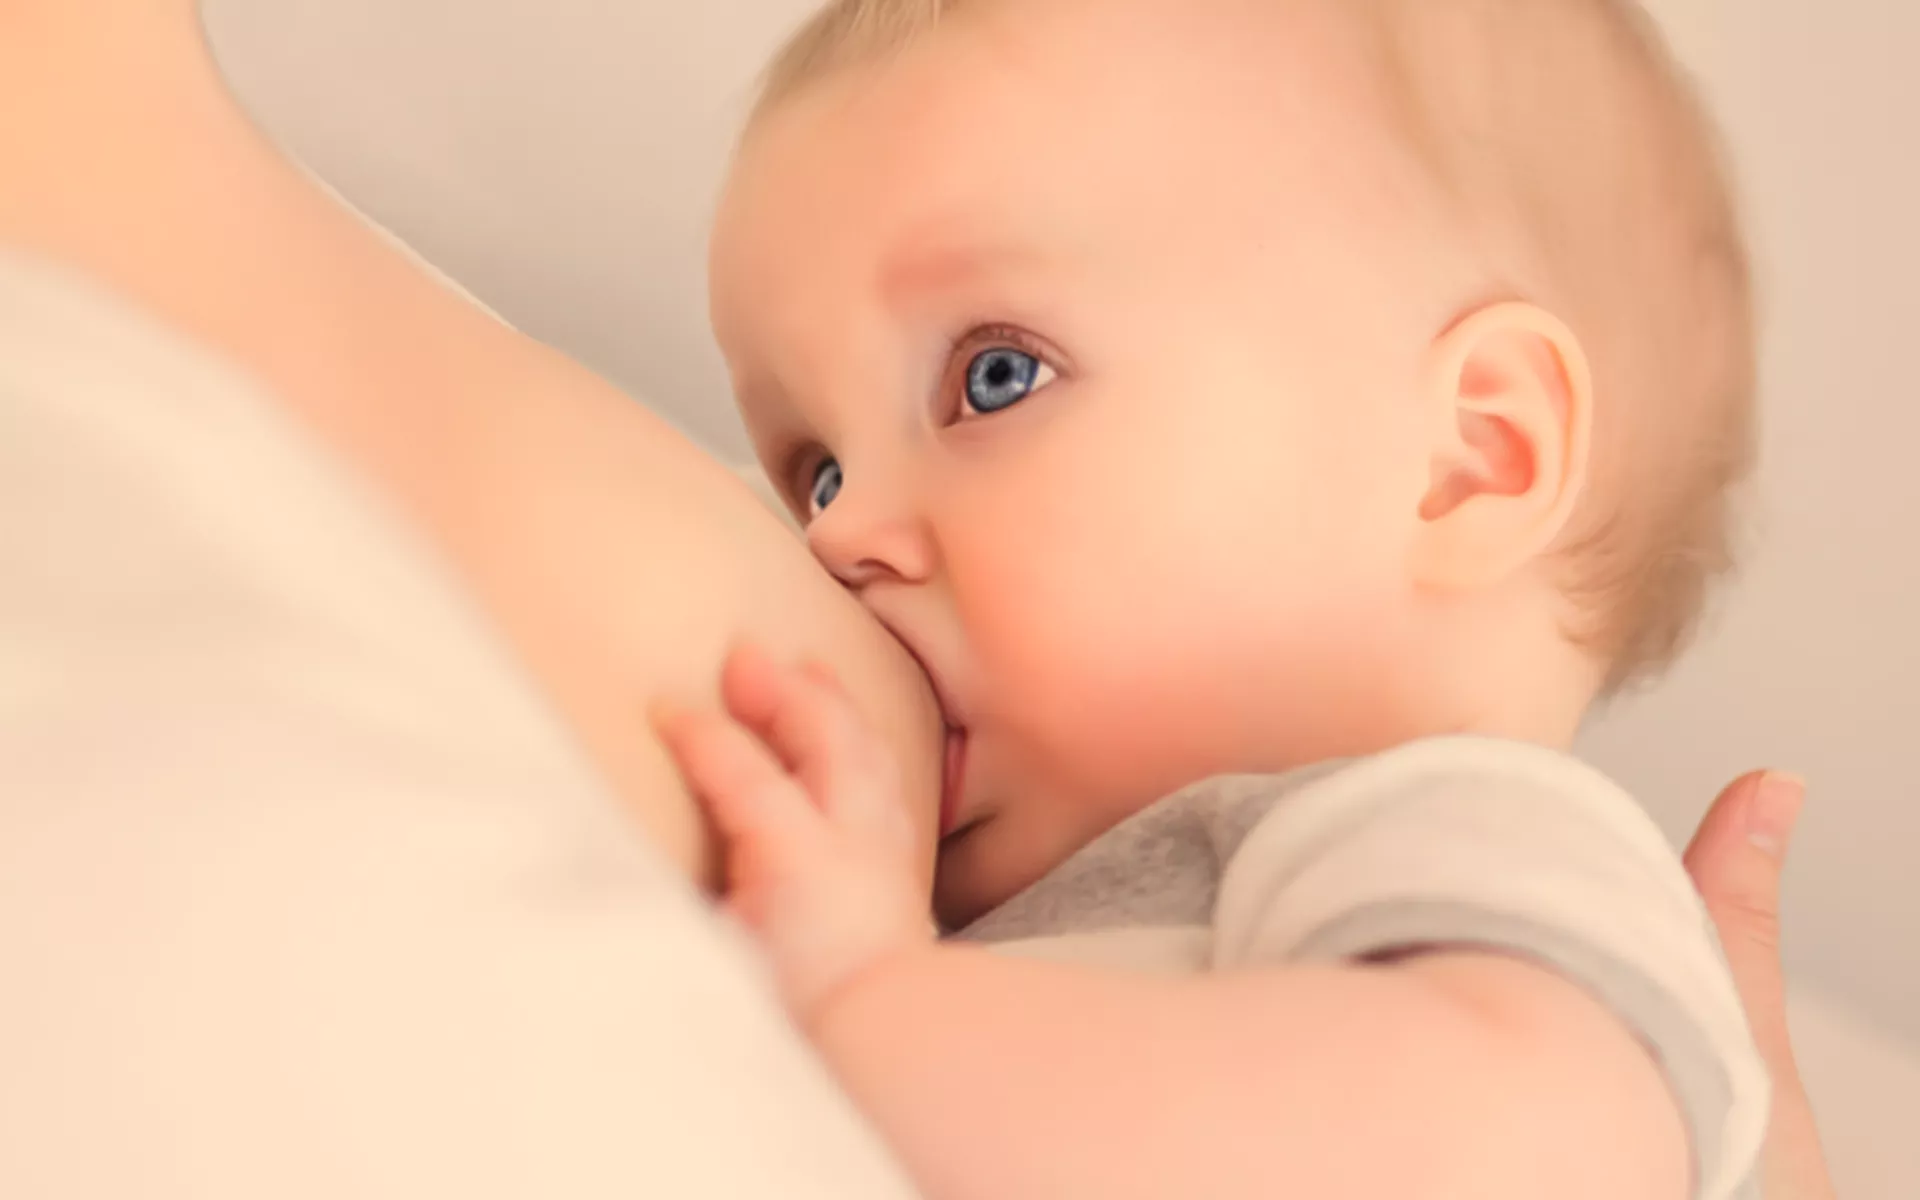  Tek Memeden Emzirme Nedeni Nedir? Bebek Neden Tek Göğüsü Tercih Eder?